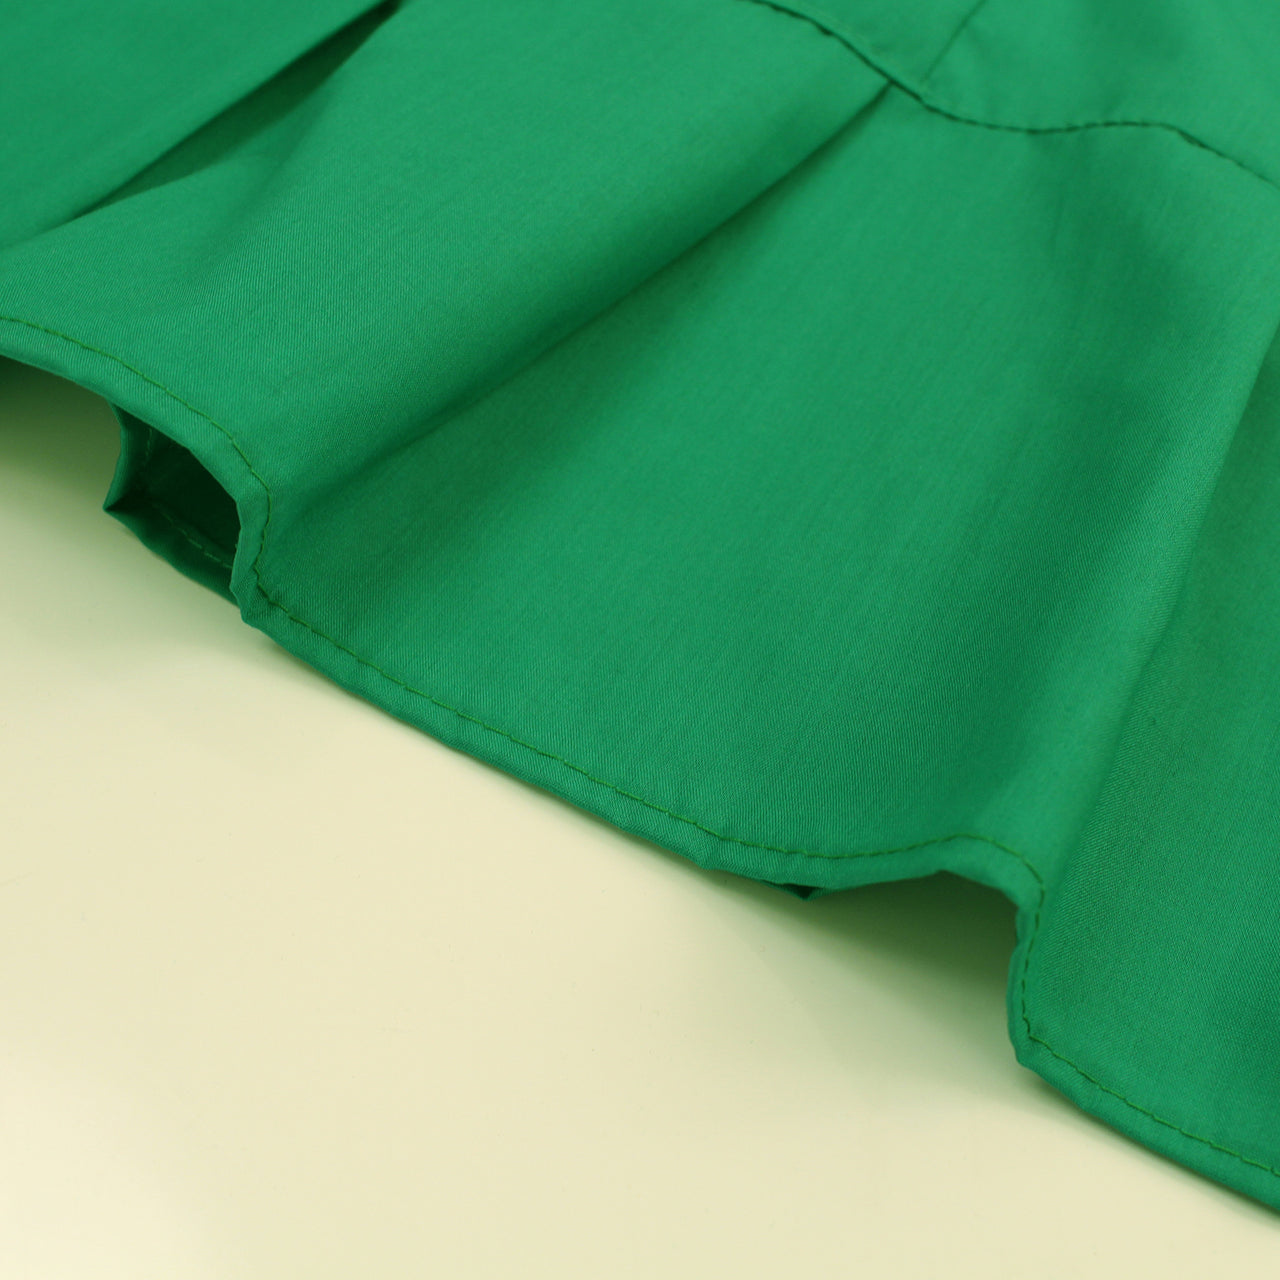 Jade - Sari (Saree) Petticoat - Available in S, M, L & XL - Underskirts For Sari's